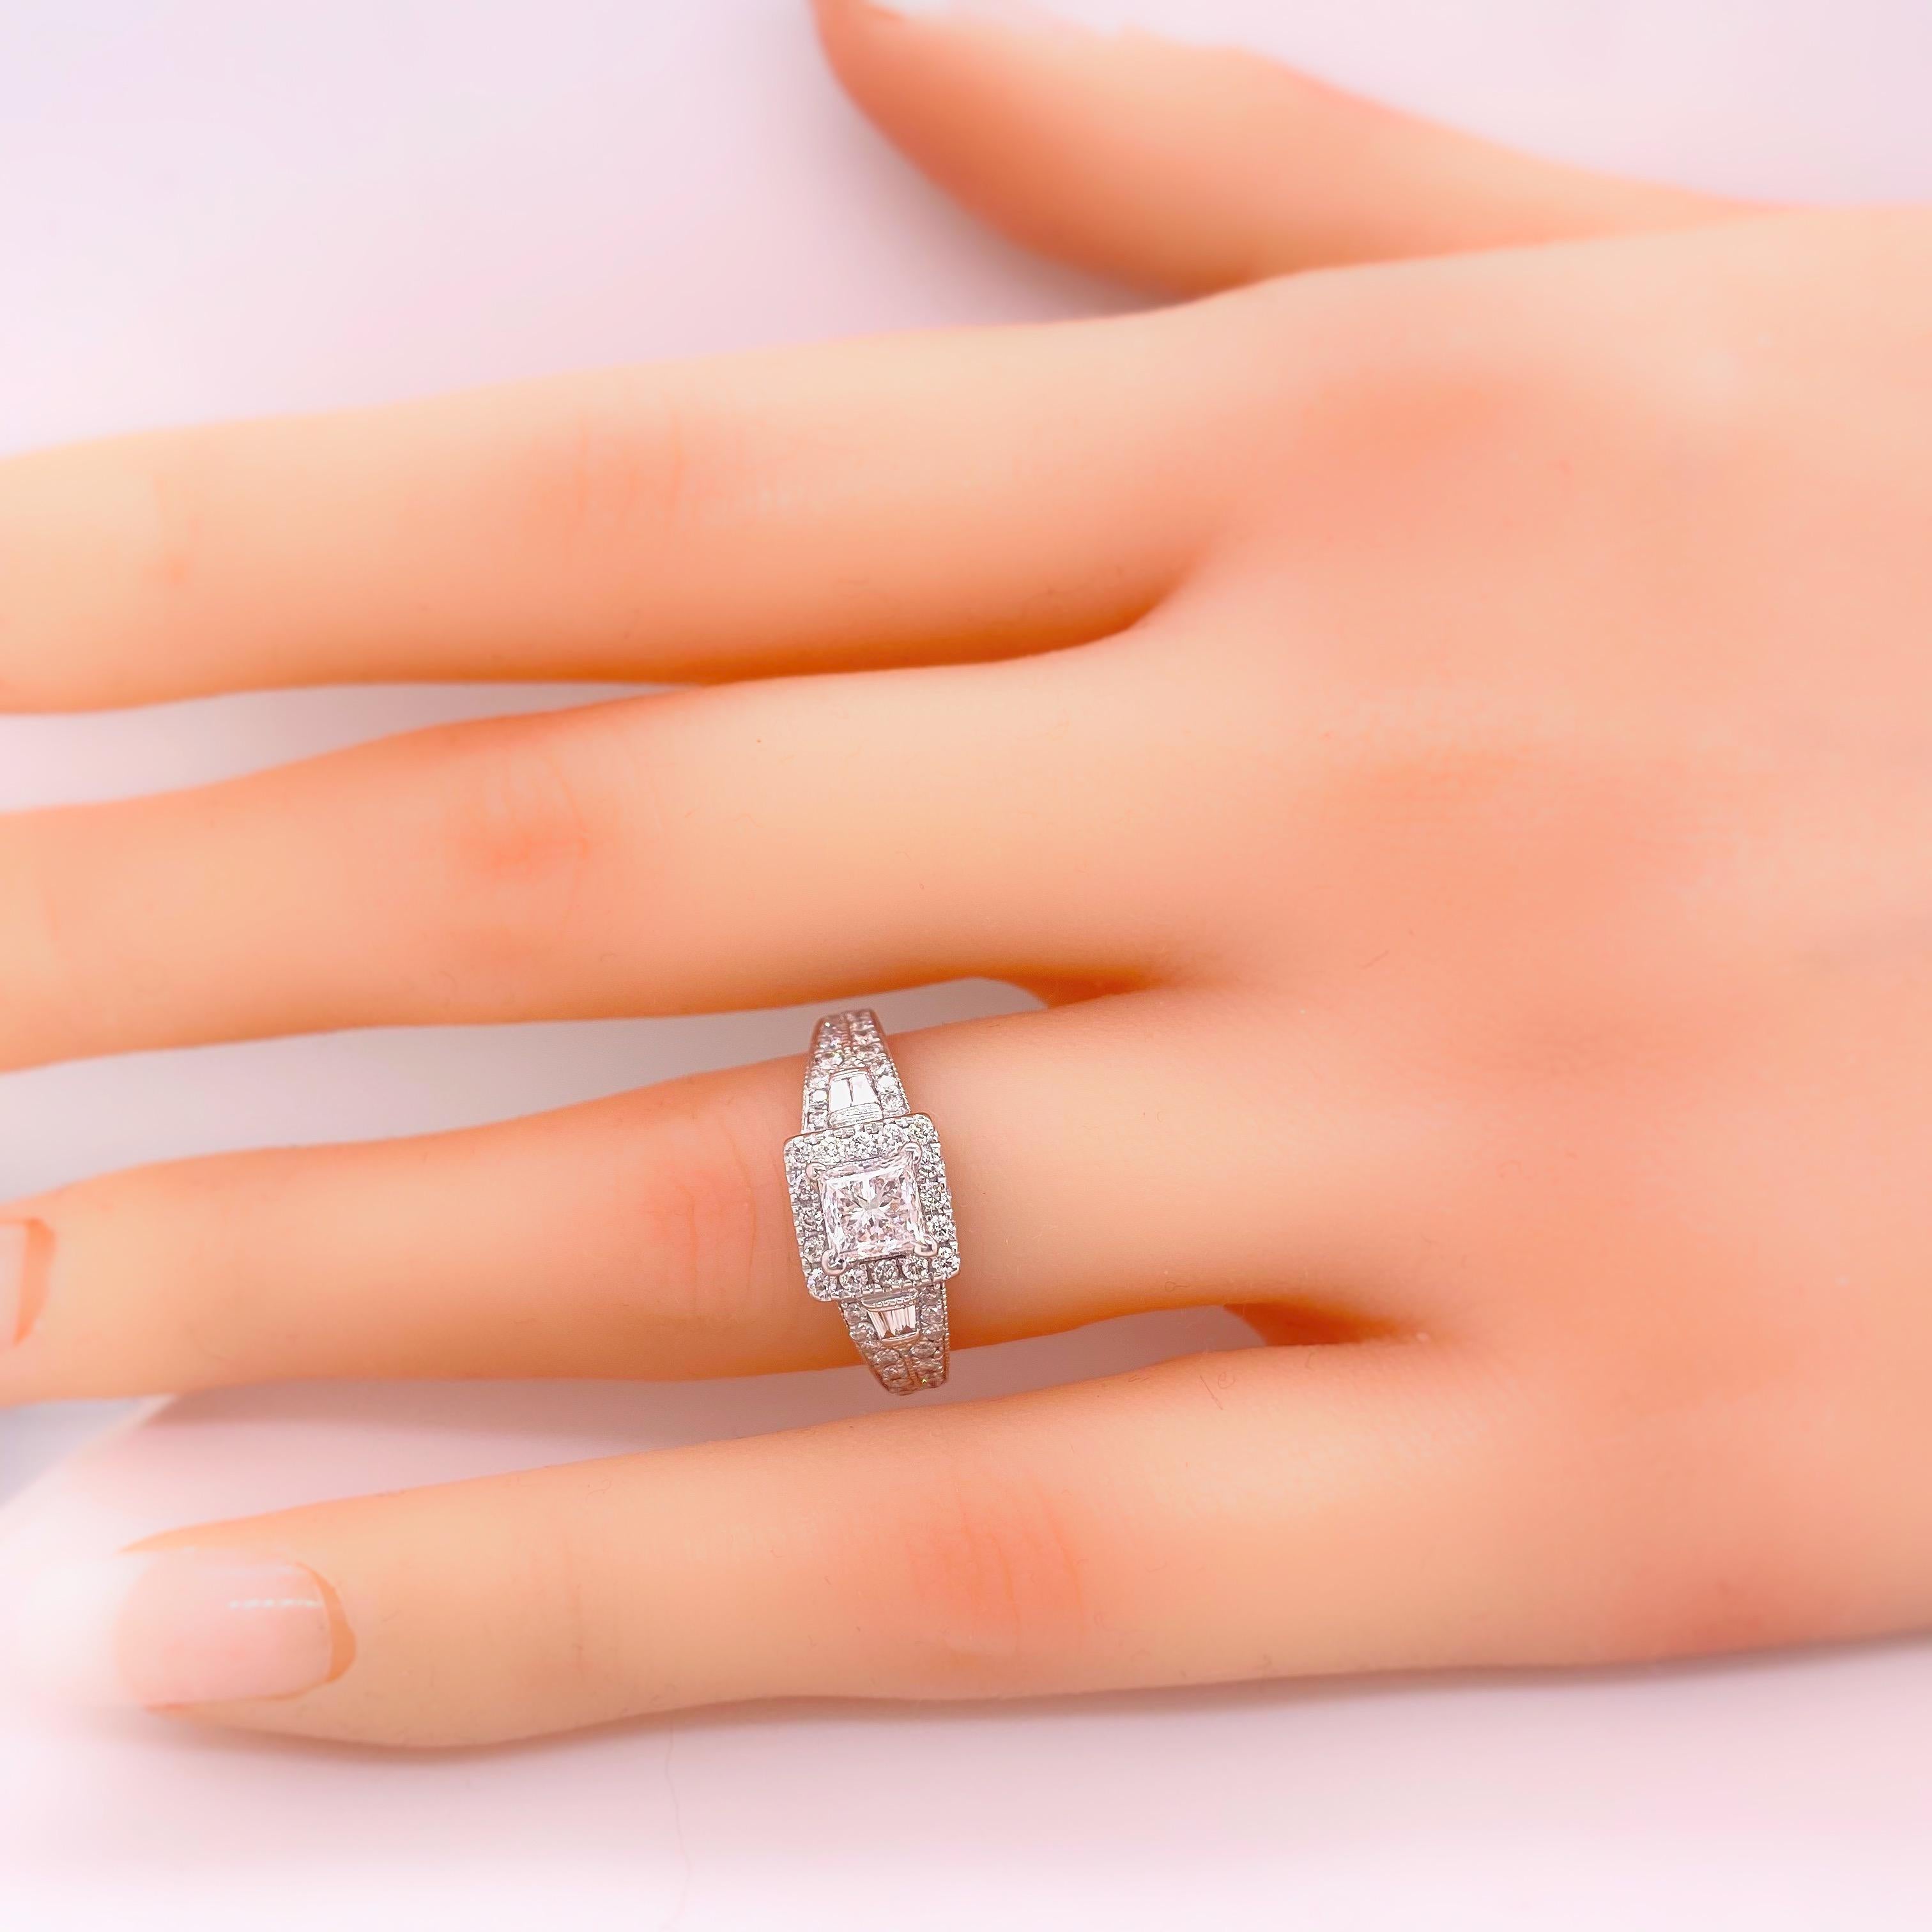 Neil Lane Princess Diamond 1.50 Carat Engagement Ring in 14 Karat White Gold For Sale 1